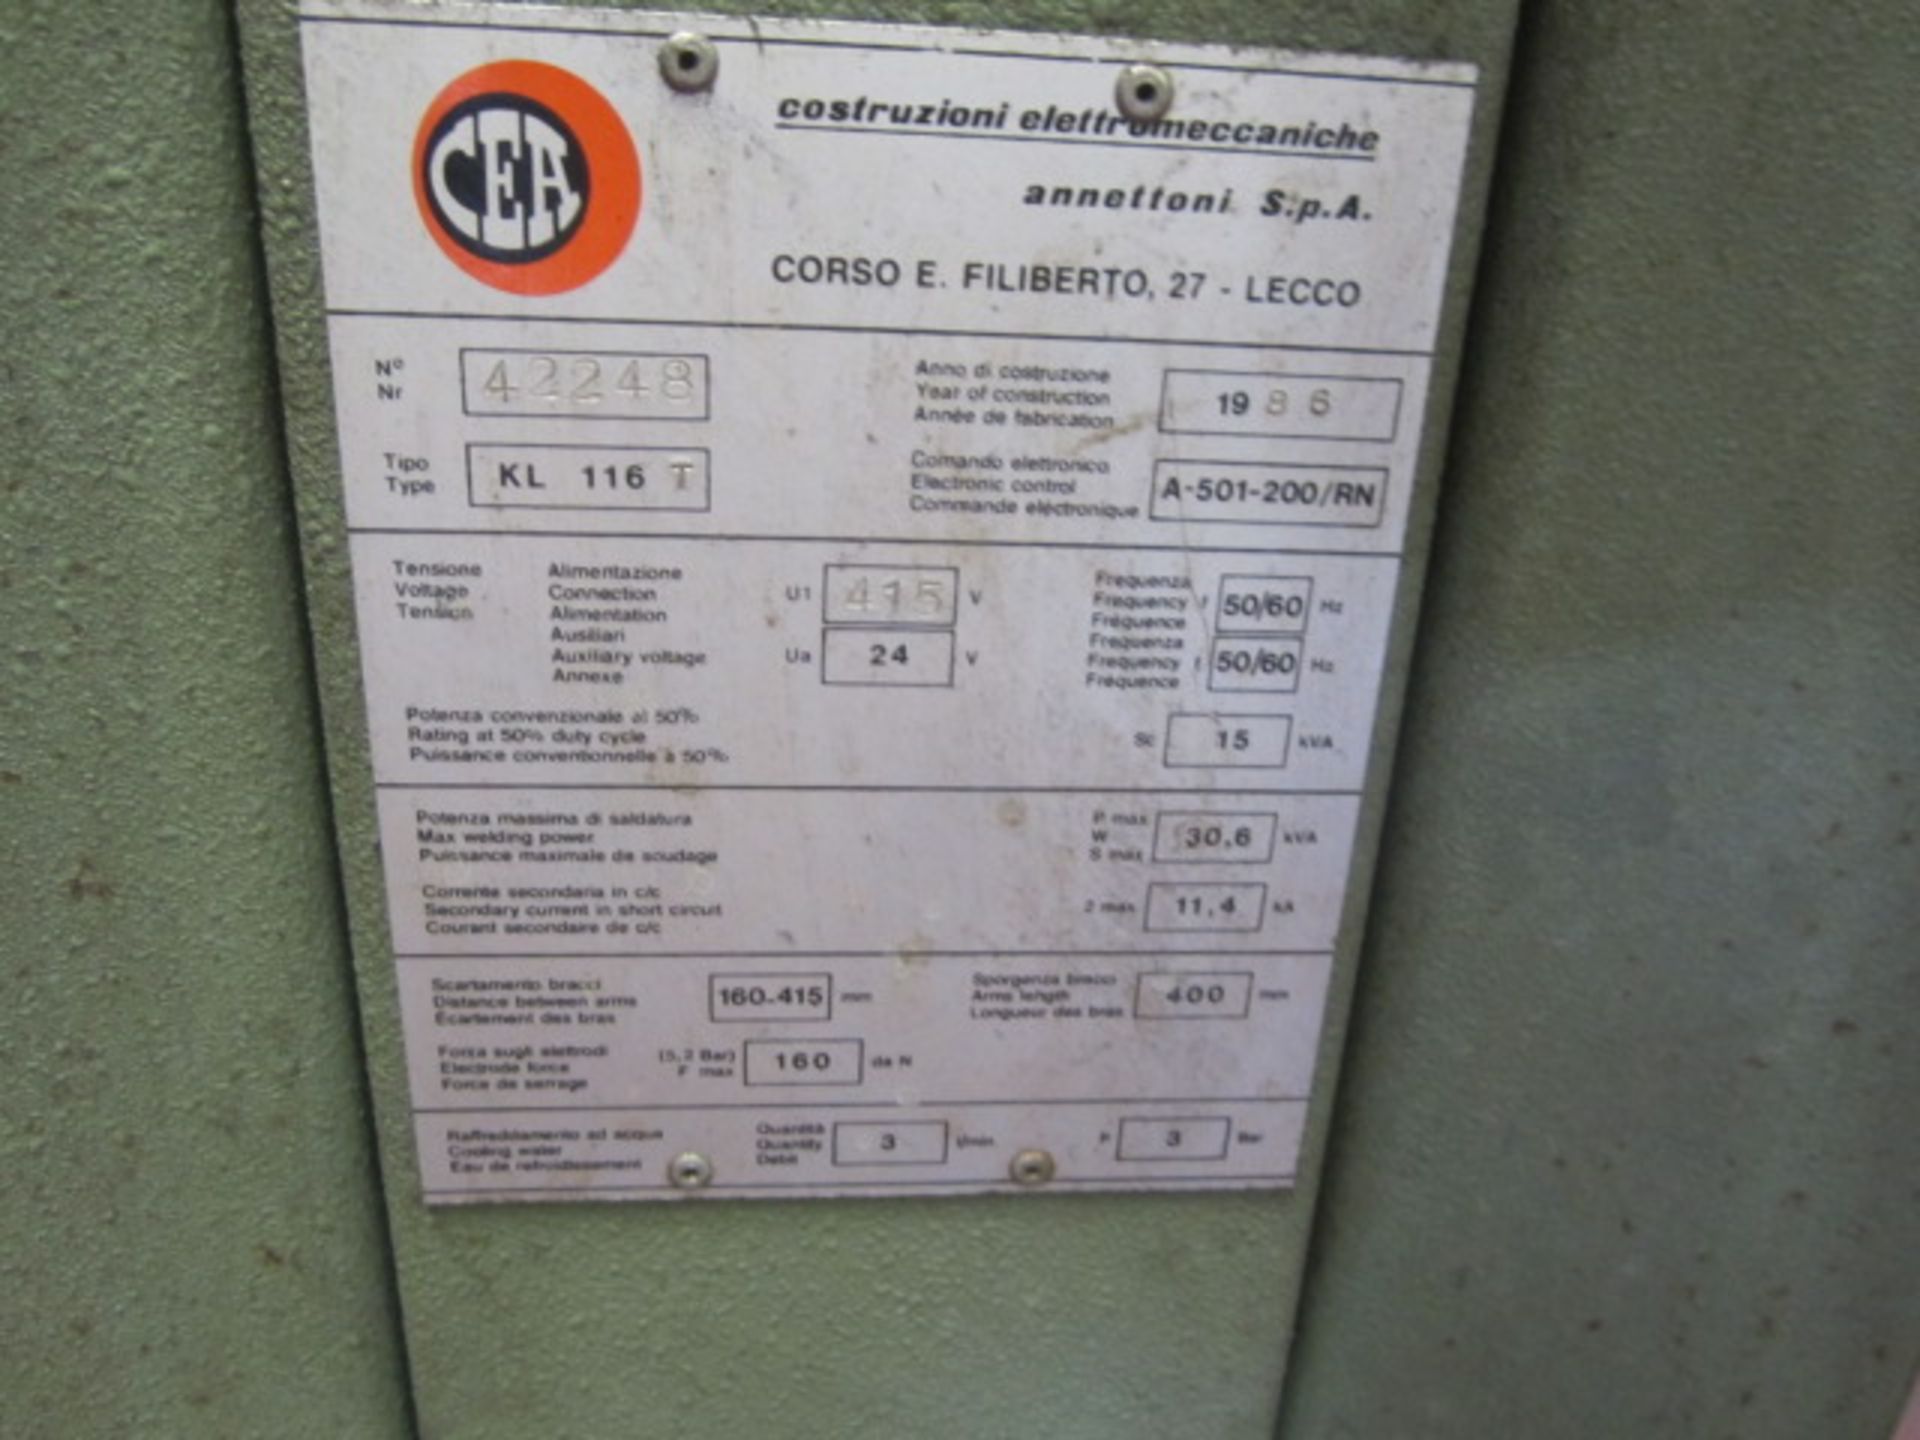 CEA KL116T spot welder, serial no. 42248 (1986). frequency 50/60 hz. max weld power 30.6 kva. - Image 5 of 6